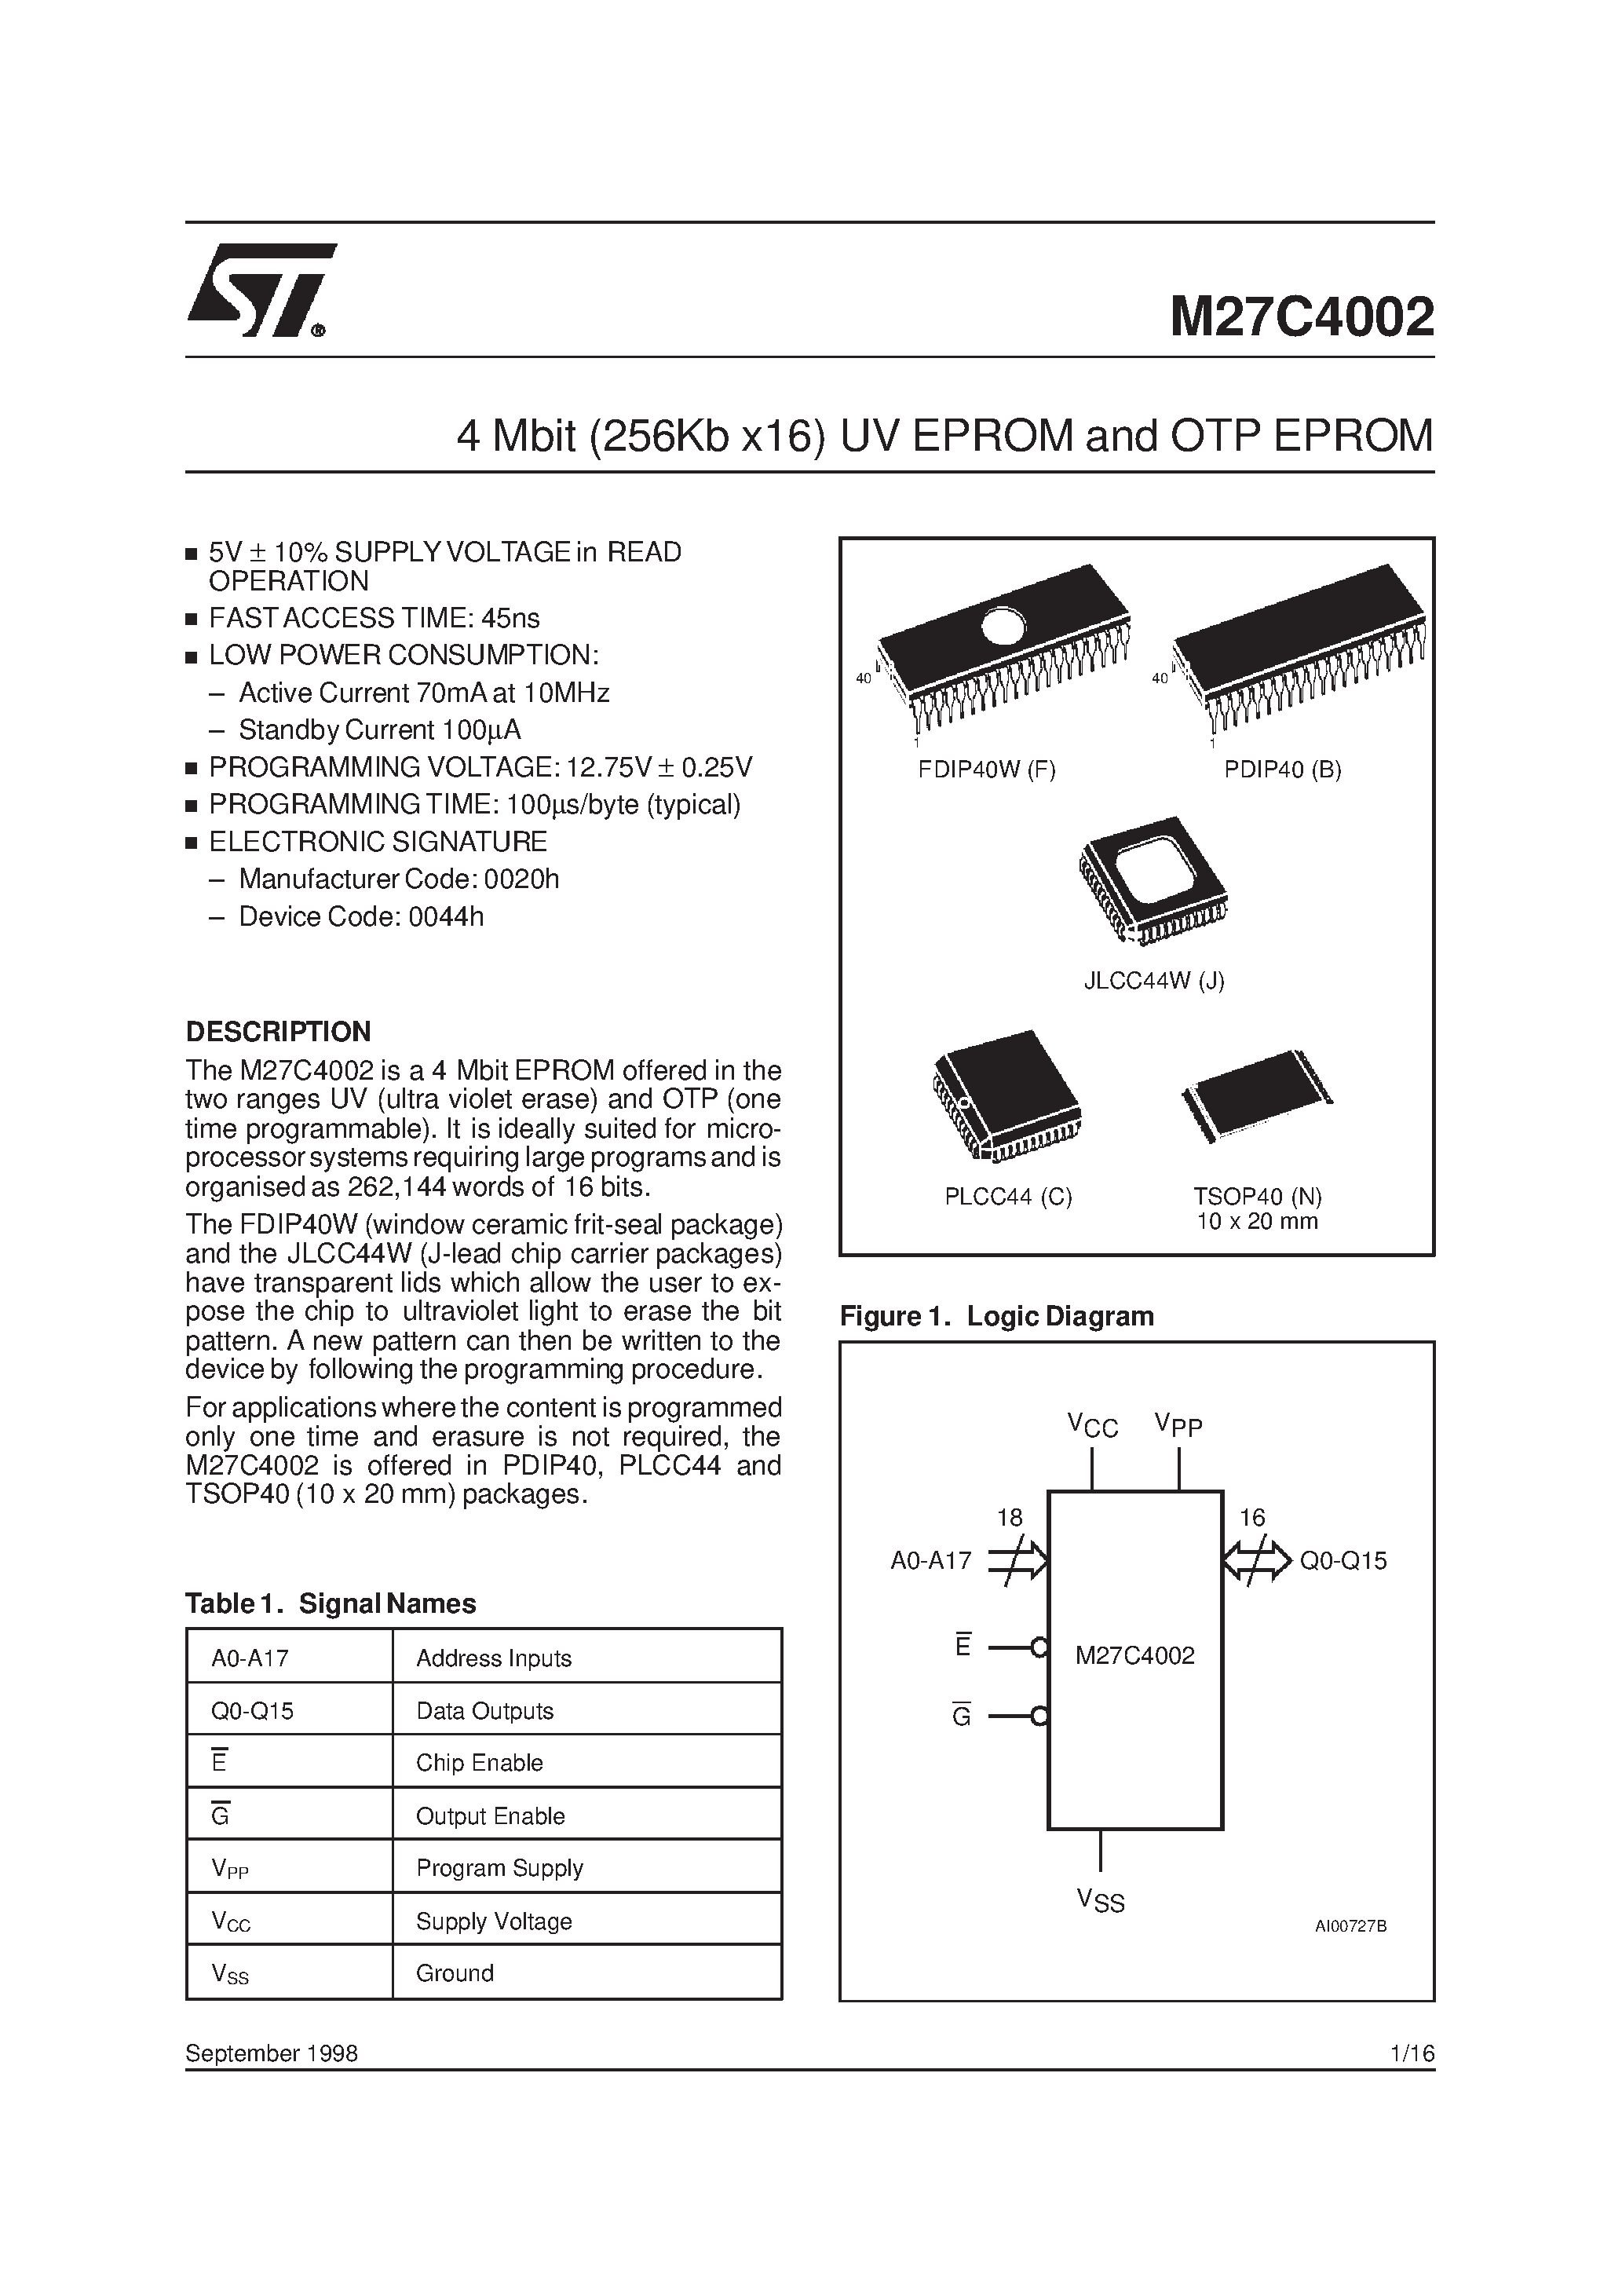 Datasheet M27C4002-10XN6X - 4 Mbit 256Kb x16 UV EPROM and OTP EPROM page 1